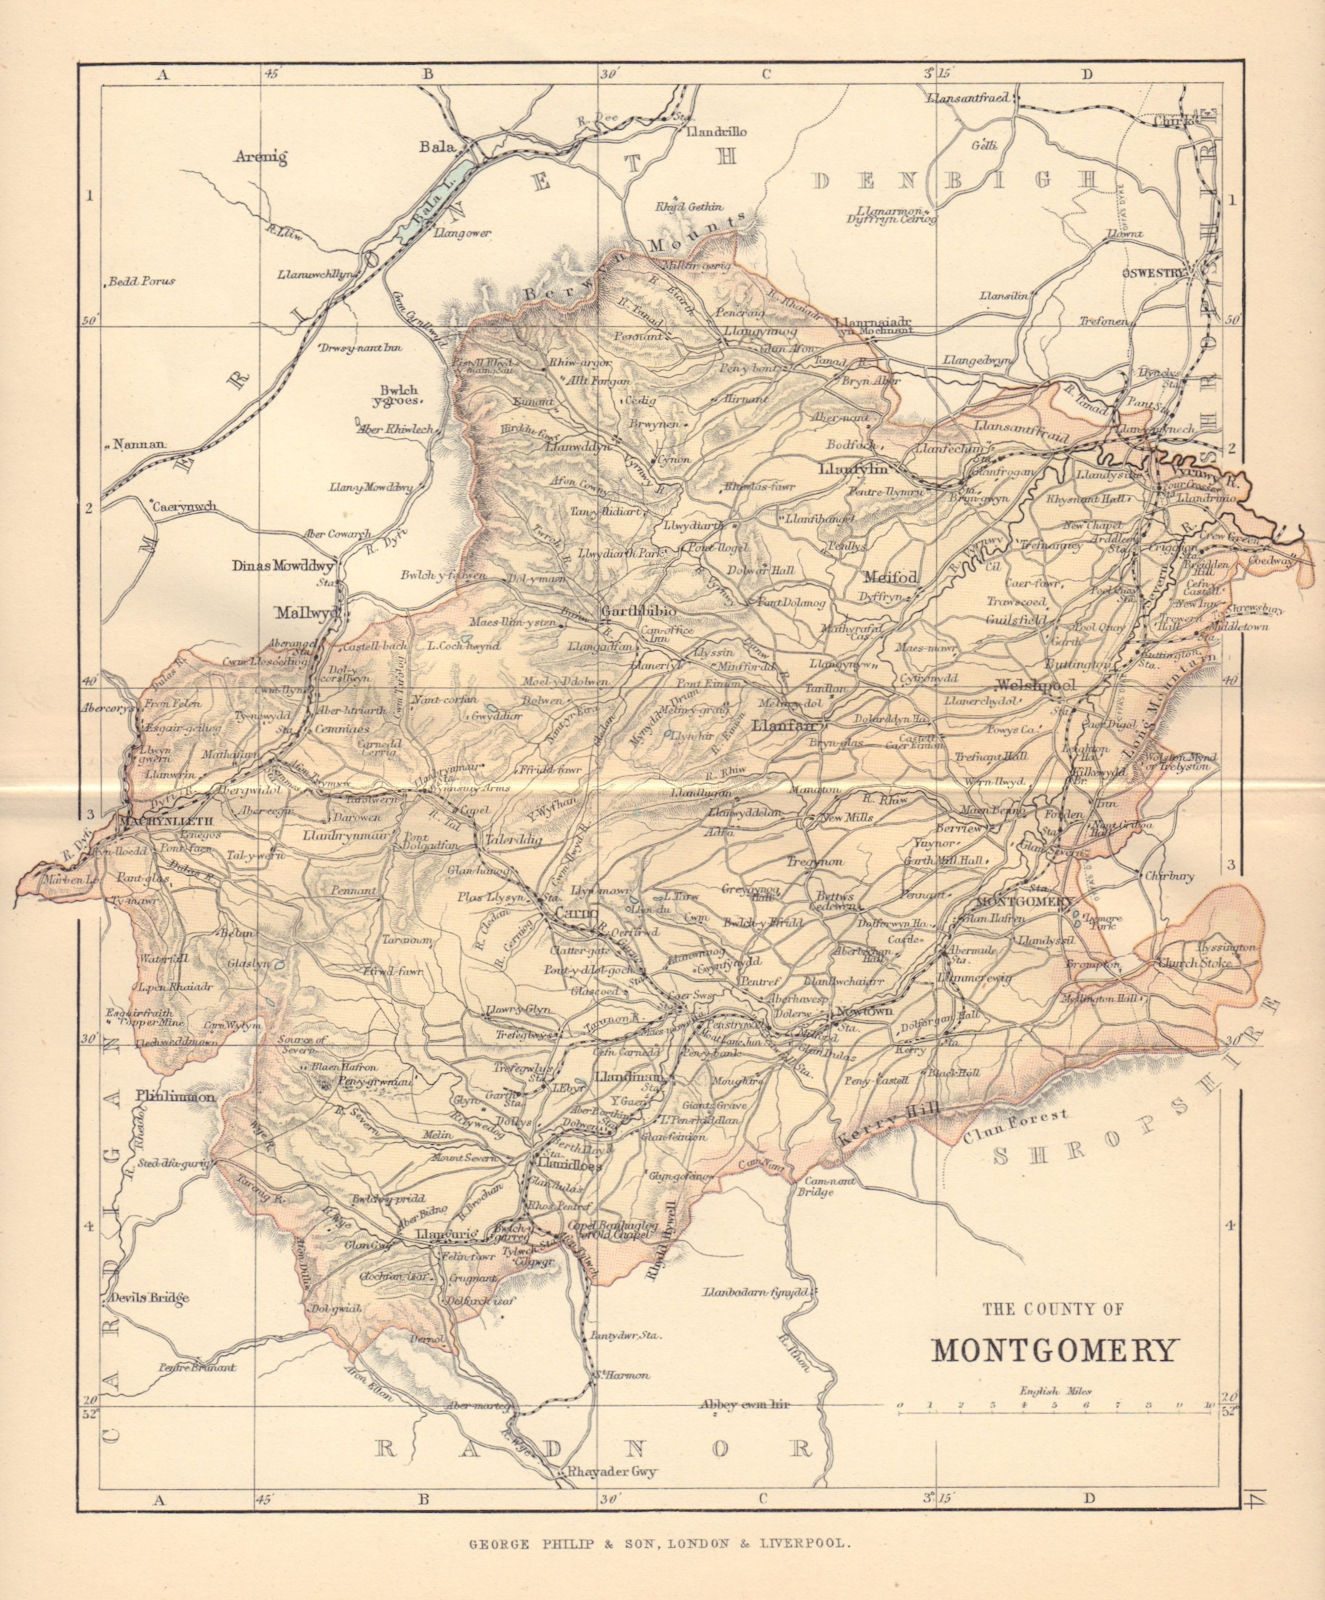 MONTGOMERYSHIRE "County of Montgomery" Welshpool Wales BARTHOLOMEW 1885 map